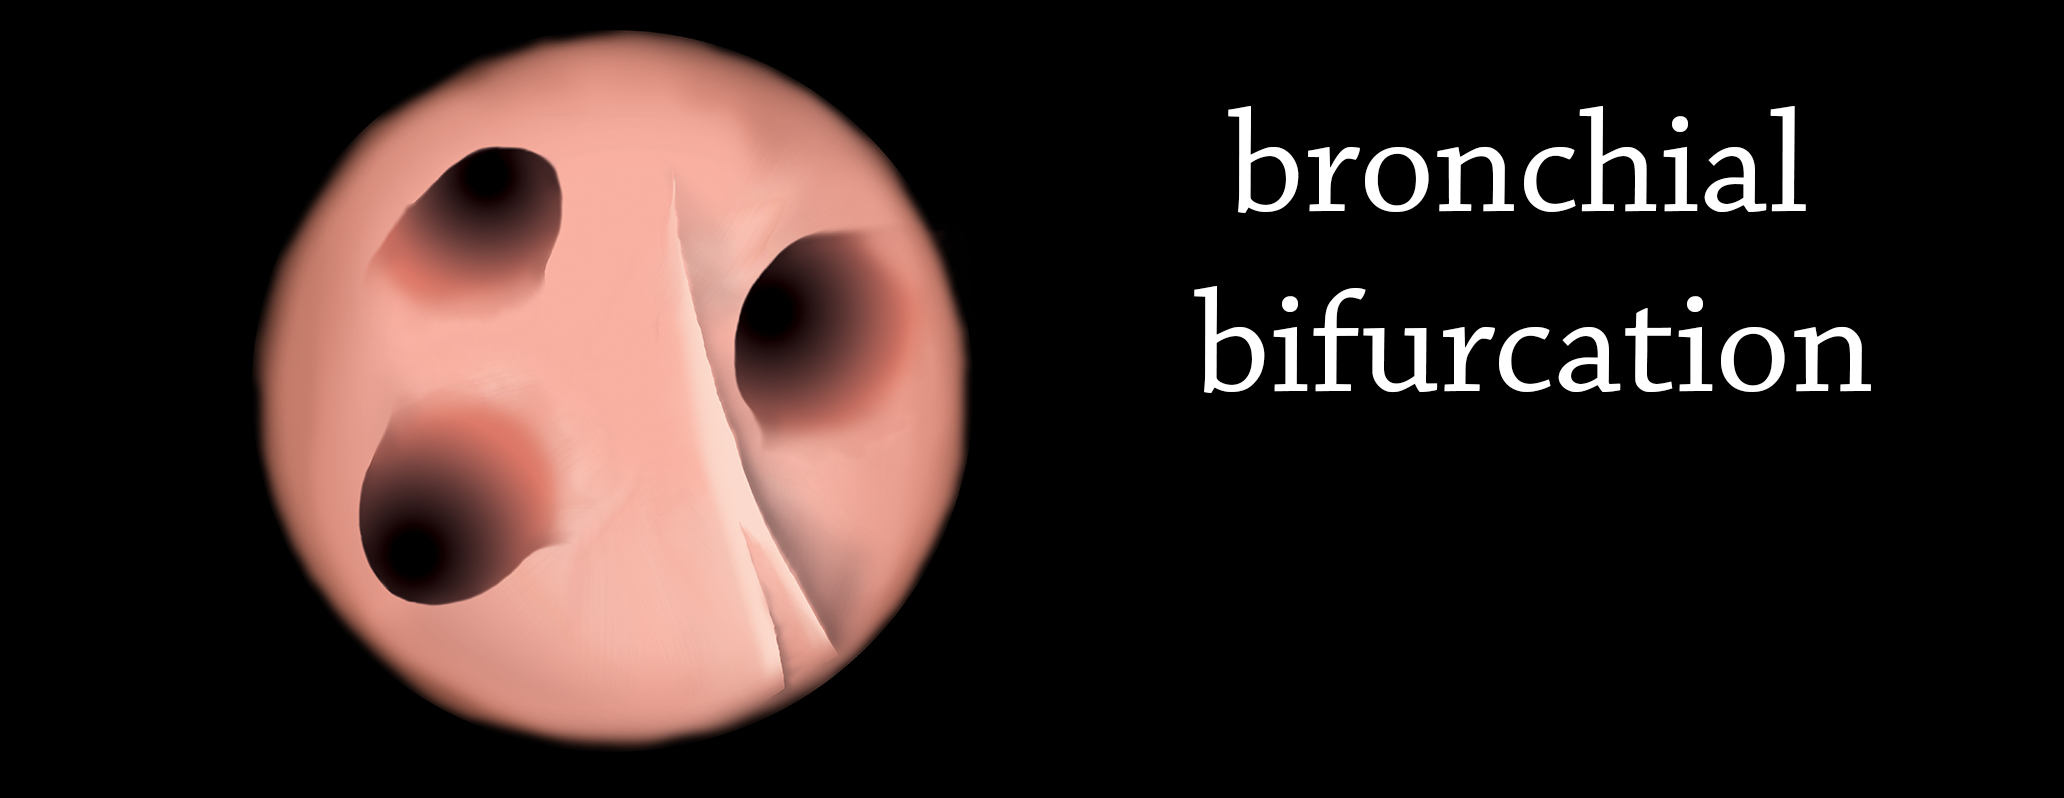 illustrazione 2Da mano libera: biforcazione dei bronchioli. Vista cranio-caudale